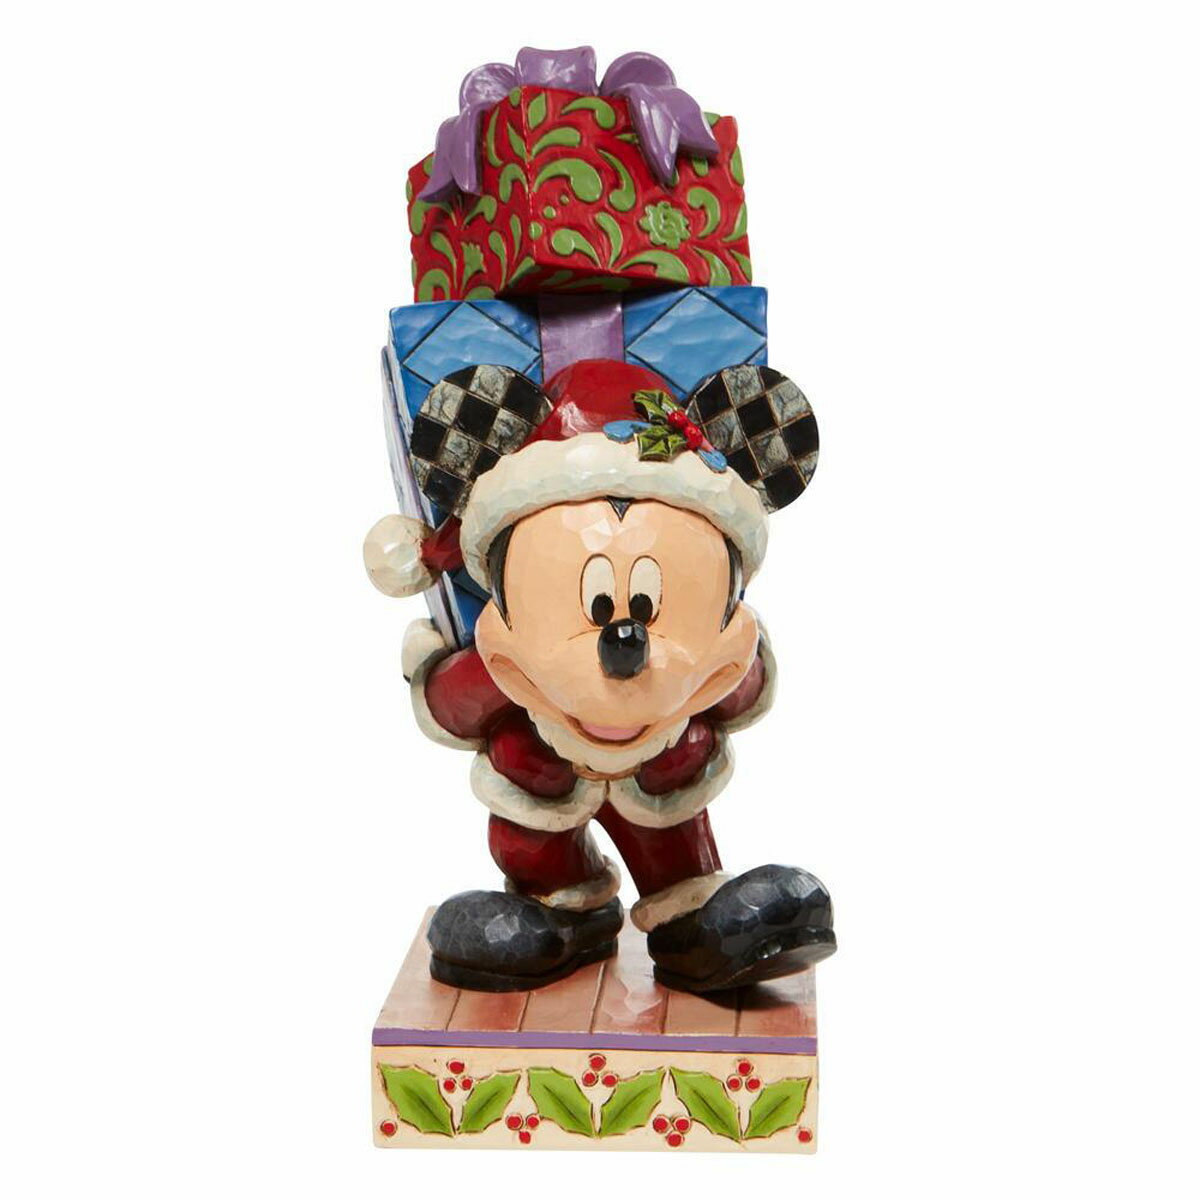 ジムショア Jim Shore ディズニー トラディション Disney Traditions ミッキー クリスマスギフト フィギュア 置物 人形 6008978 クリスマス インテリア